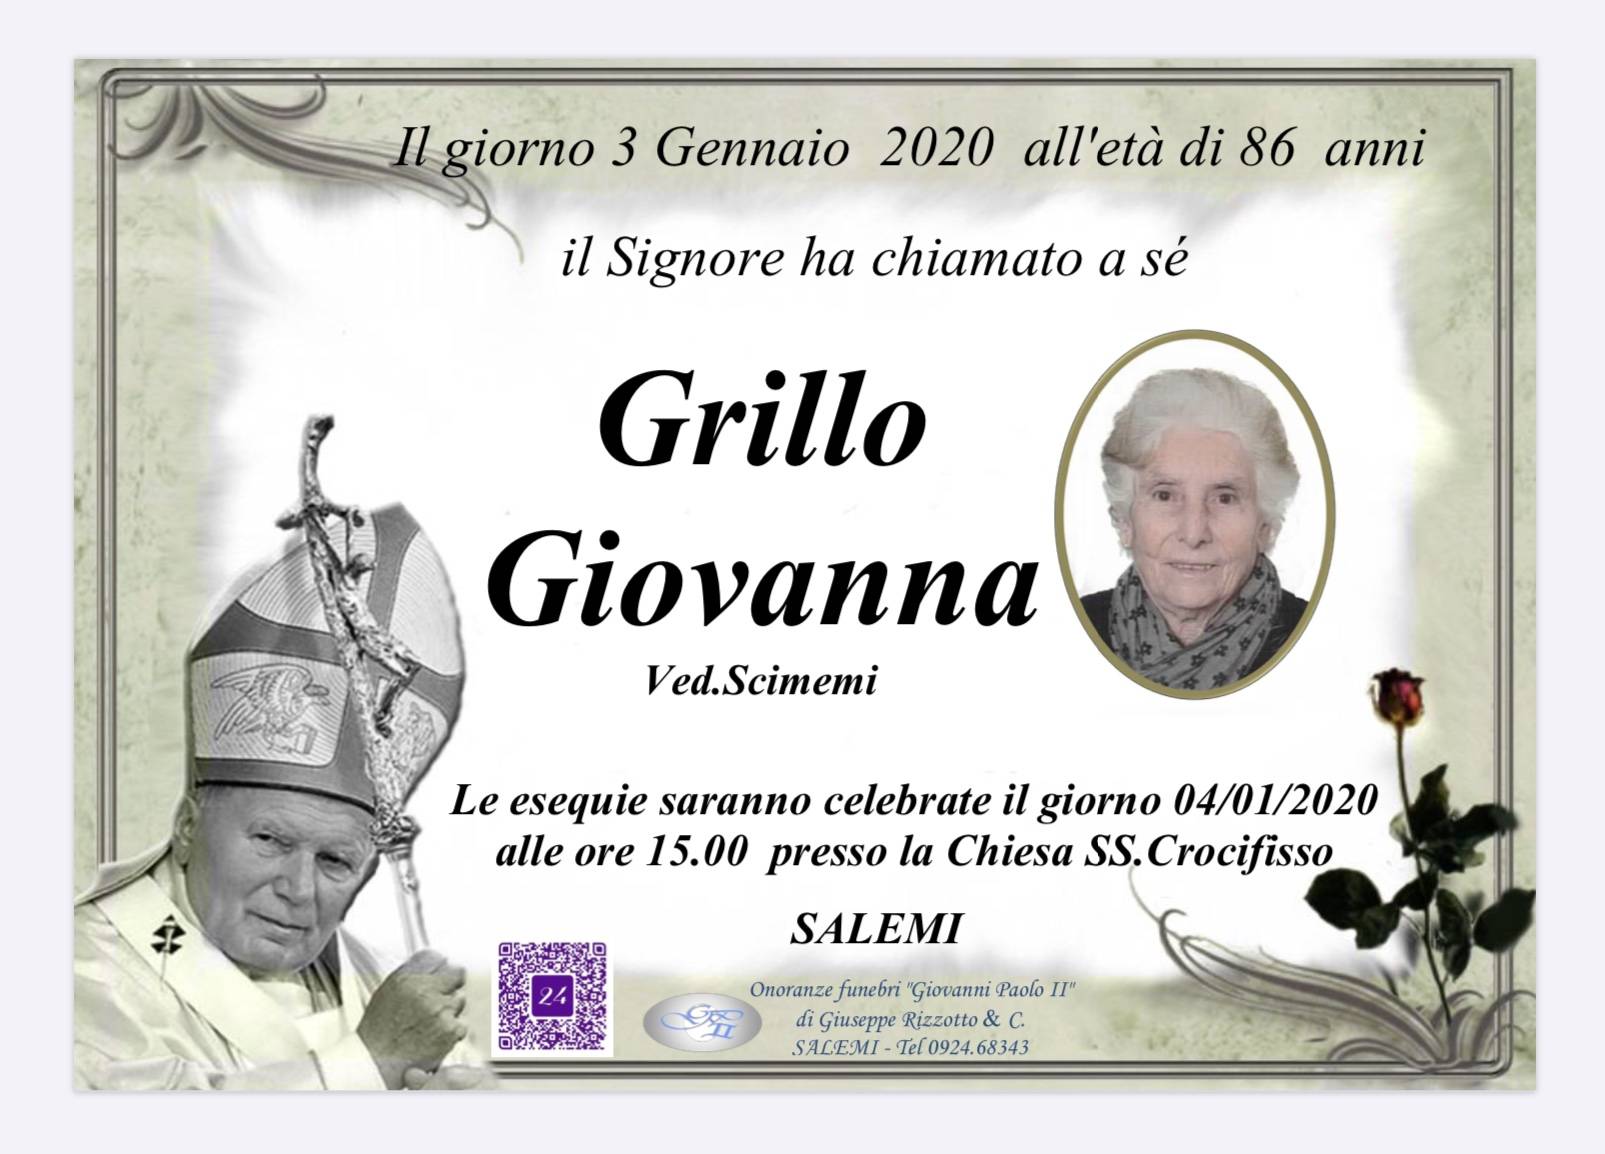 Giovanna Grillo